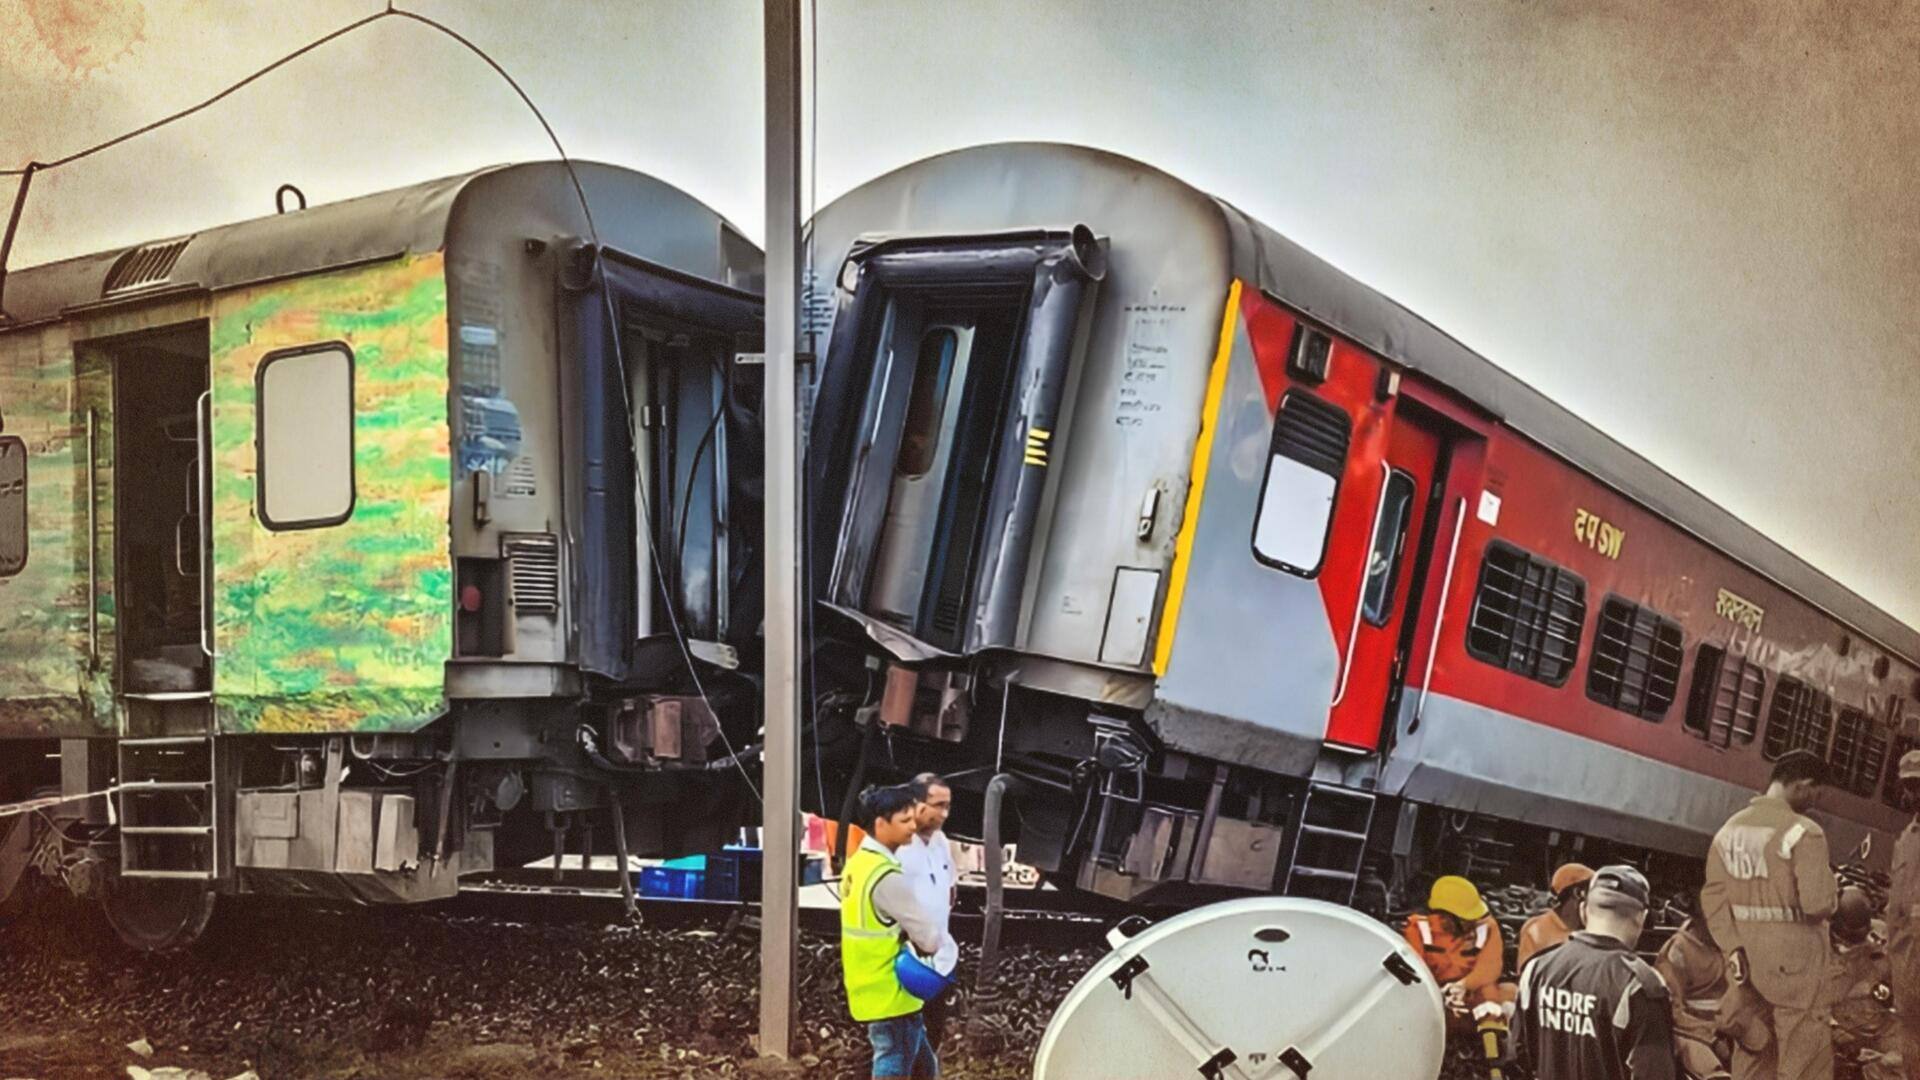 बालासोर हादसे से पहले दी गई थी बड़ी दुर्घटना की चेतावनी, रेल मंत्रालय ने की नजरअंदाज  